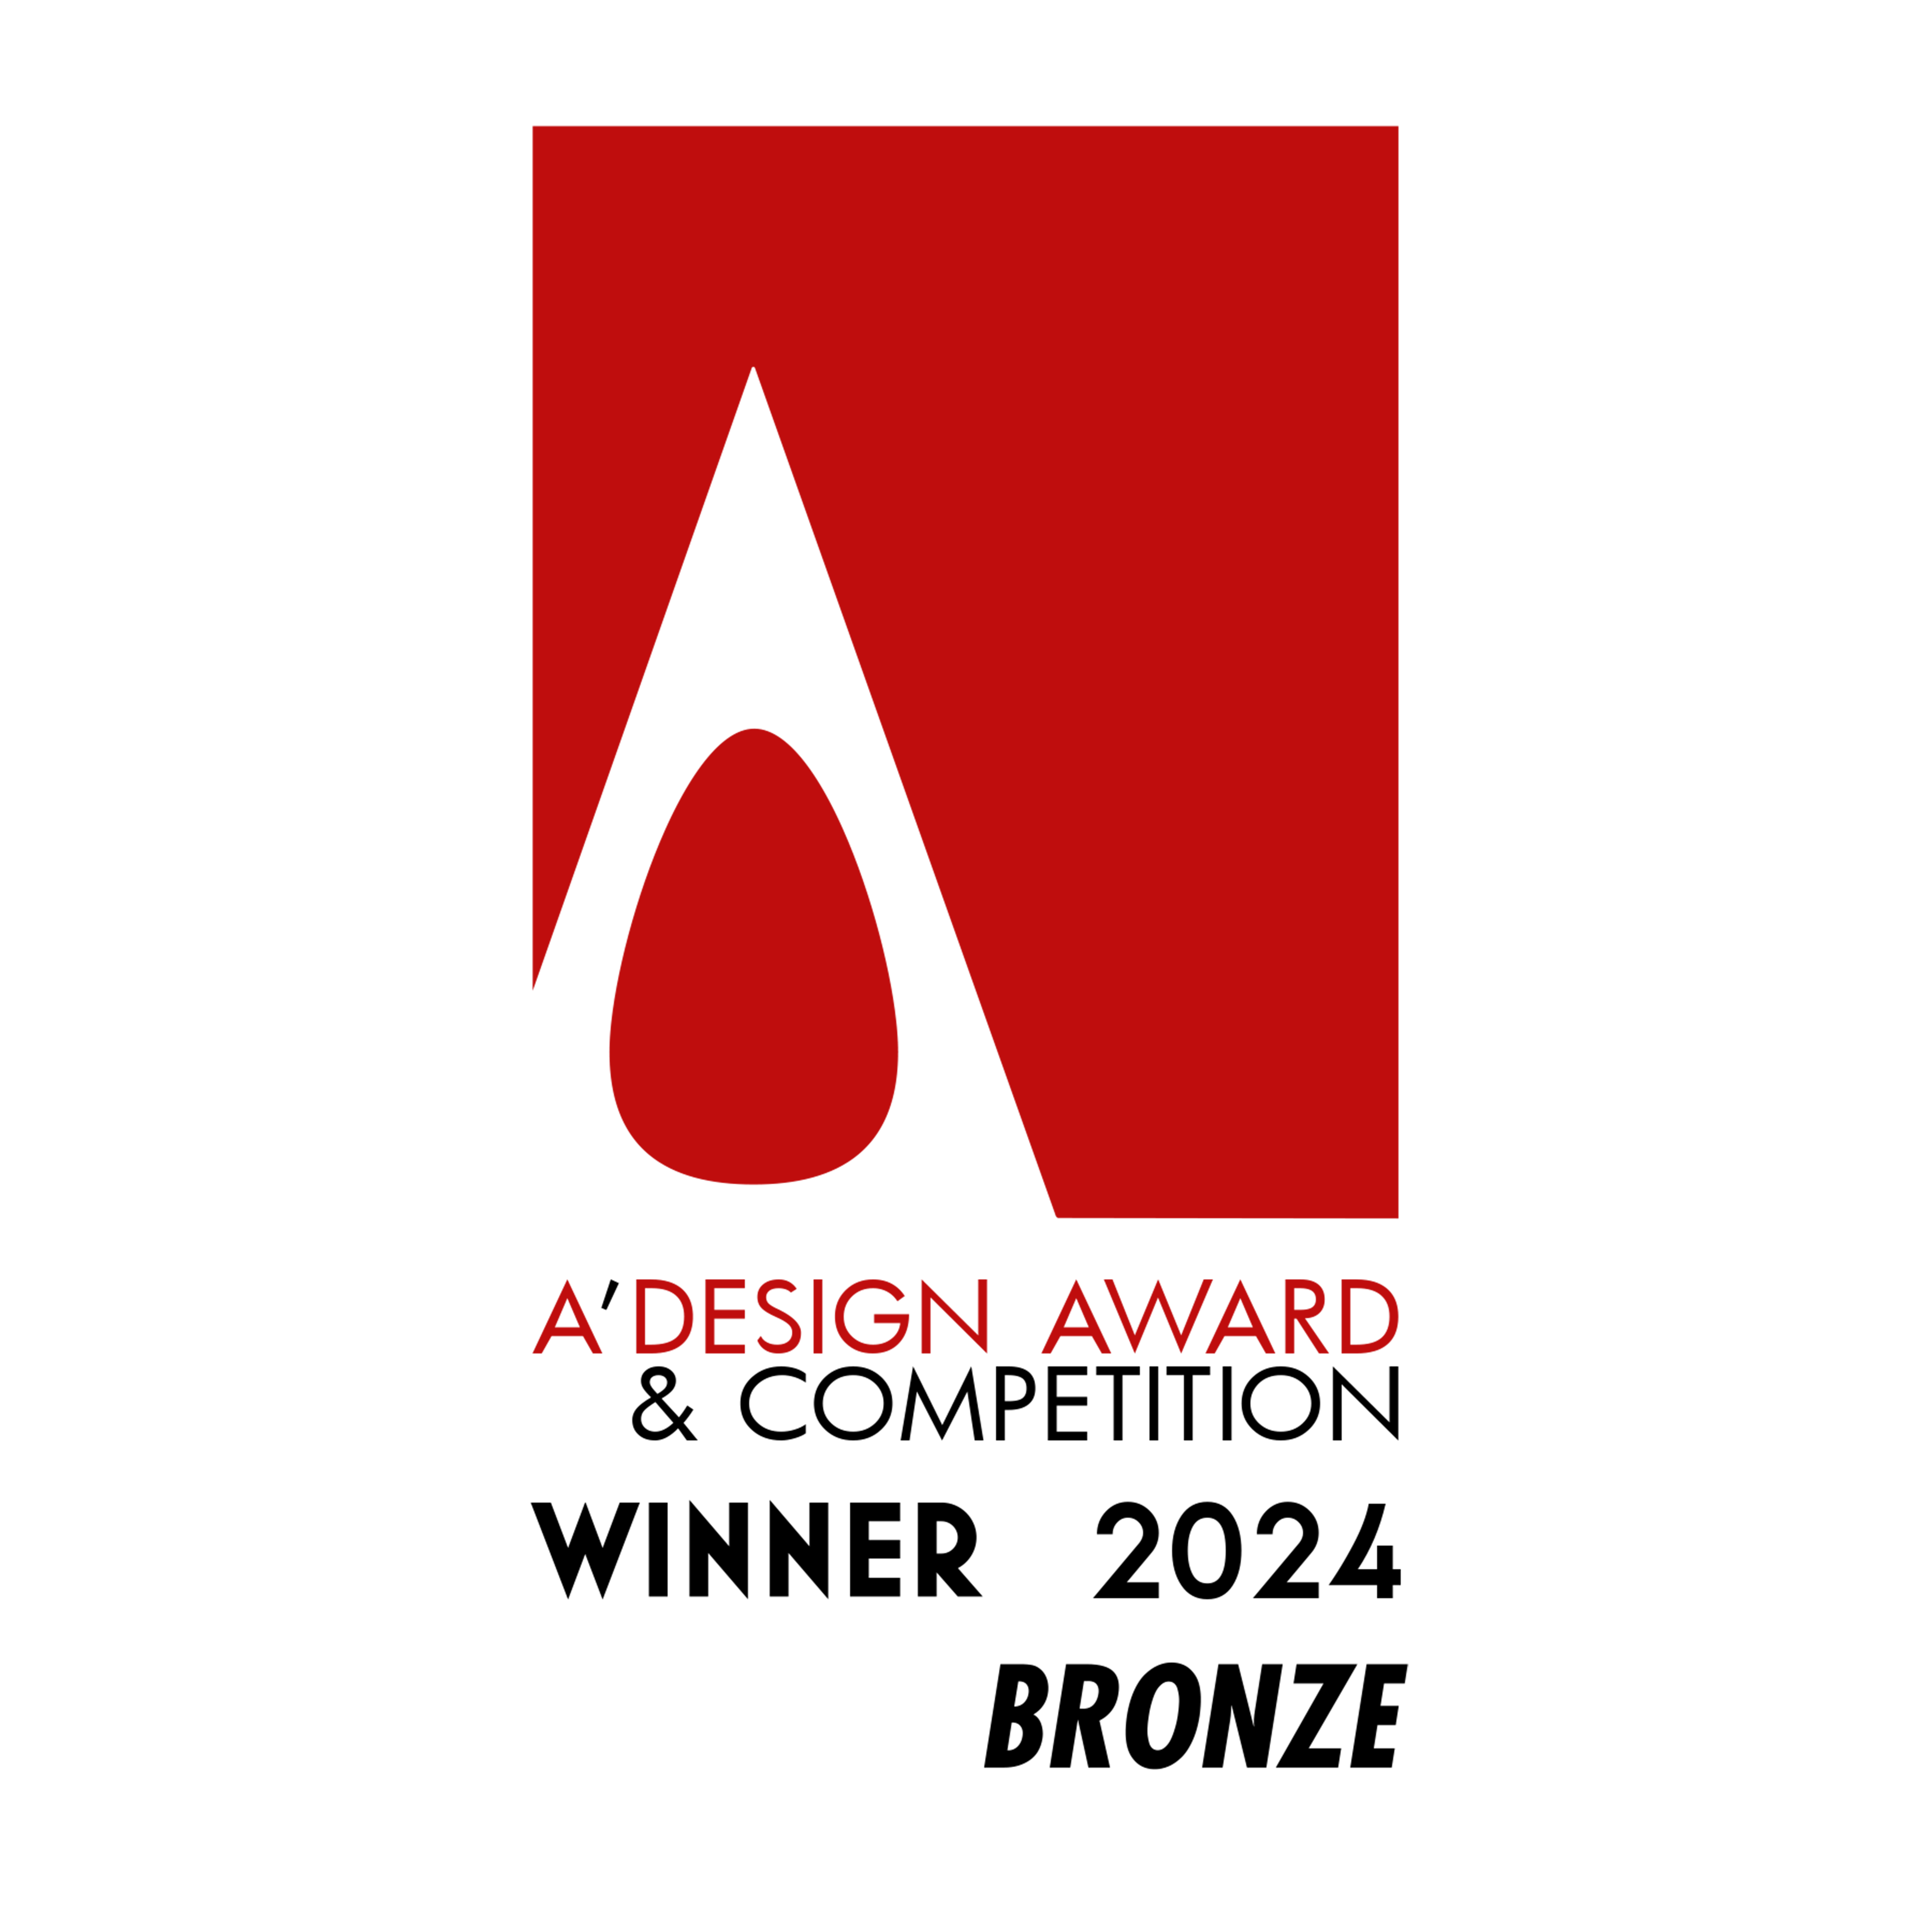 A'design Award